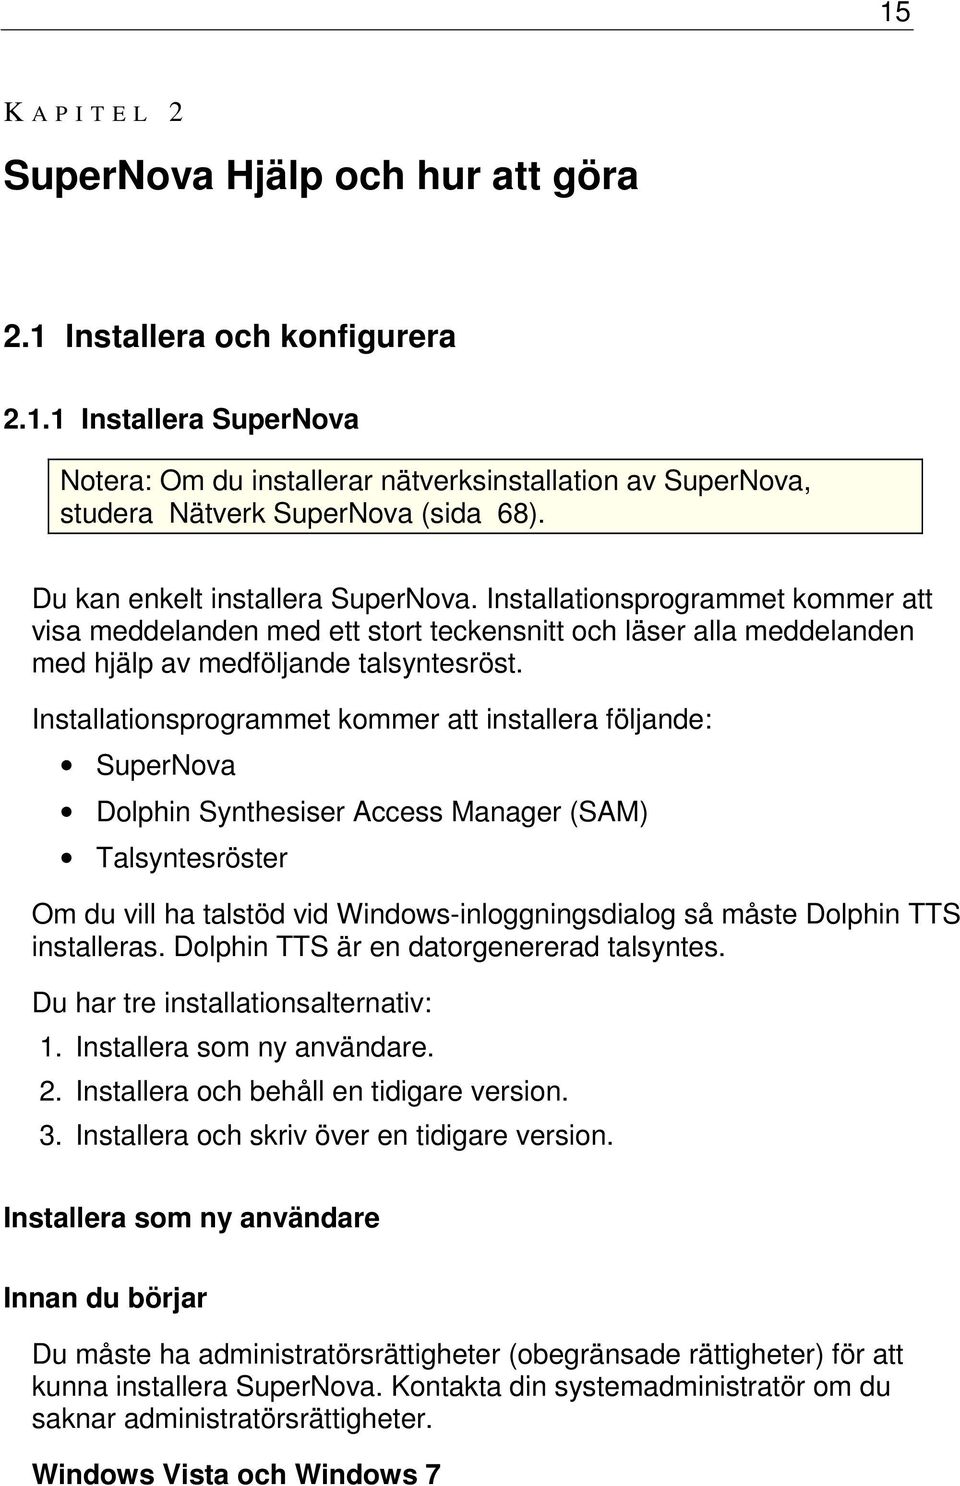 Installationsprogrammet kommer att installera följande: SuperNova Dolphin Synthesiser Access Manager (SAM) Talsyntesröster Om du vill ha talstöd vid Windows-inloggningsdialog så måste Dolphin TTS